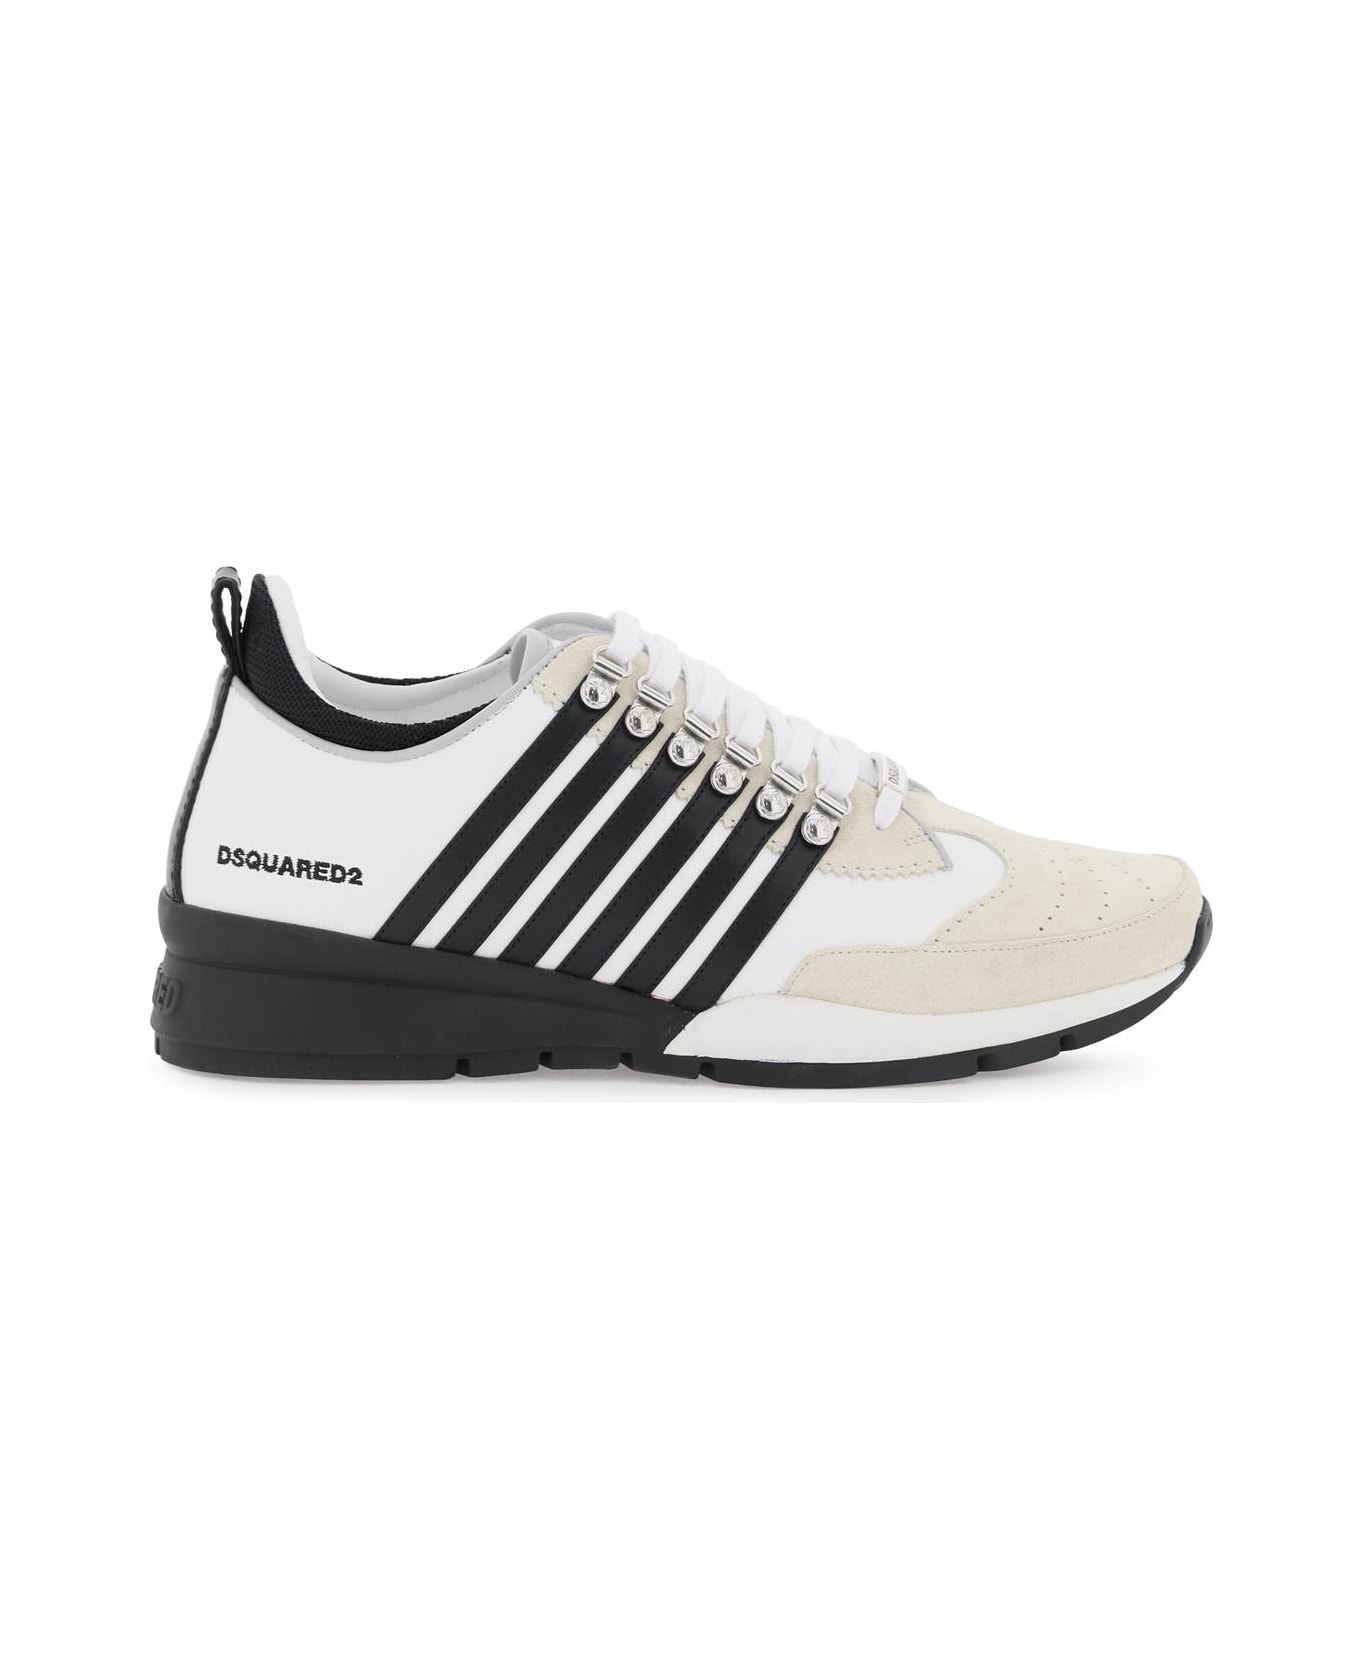 Dsquared2 'legendary' Sneakers - WHITE BLACK (White)